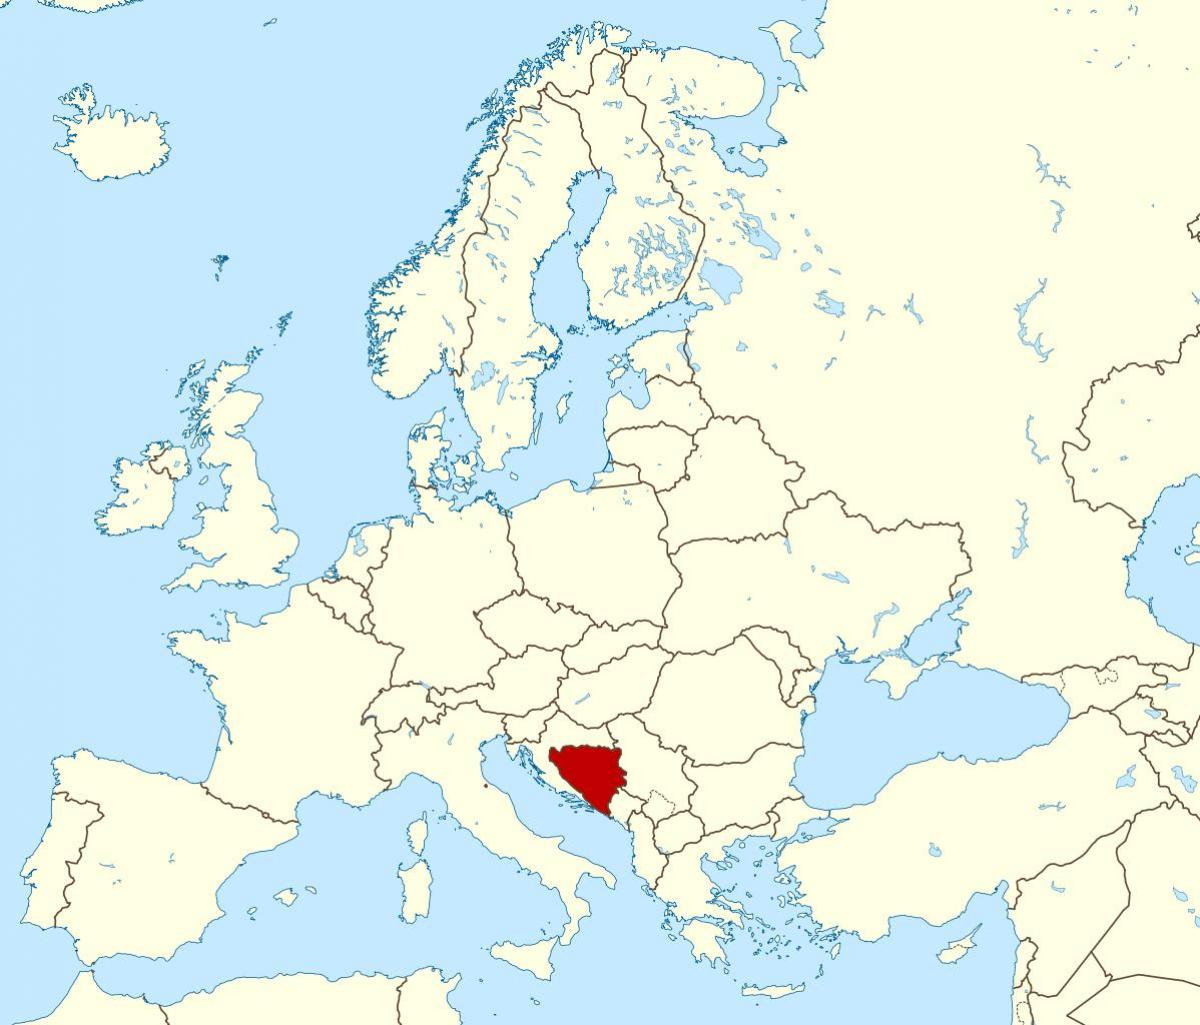 Bosnja dhe Hercegovina në hartë të botës